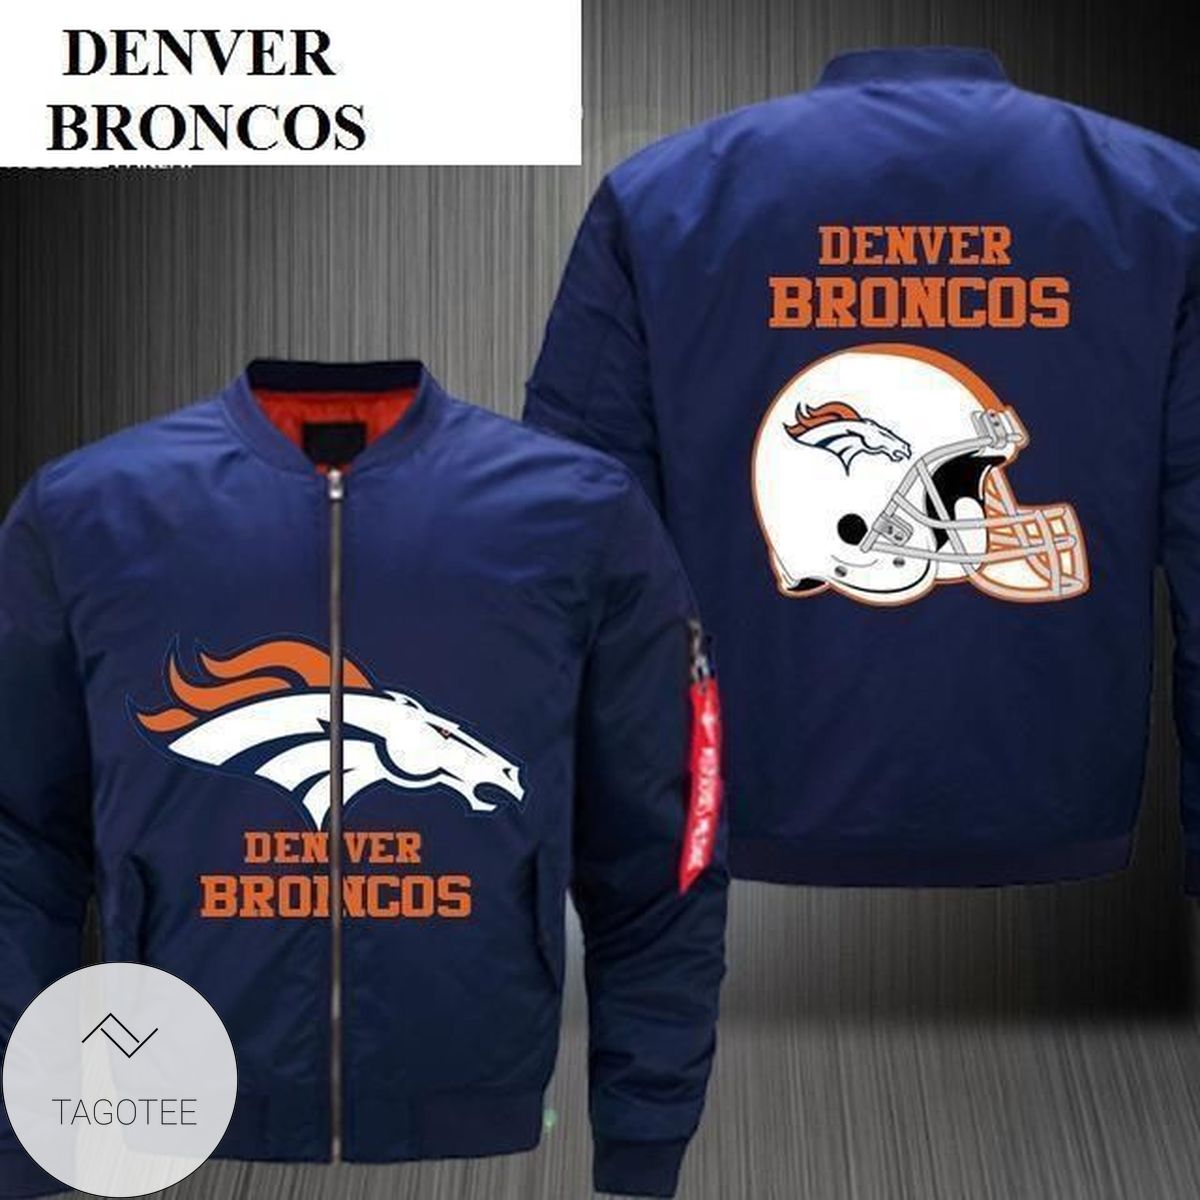 Low Price Nfl Jackets Men Denver Broncos Bomber Jacket For Sale